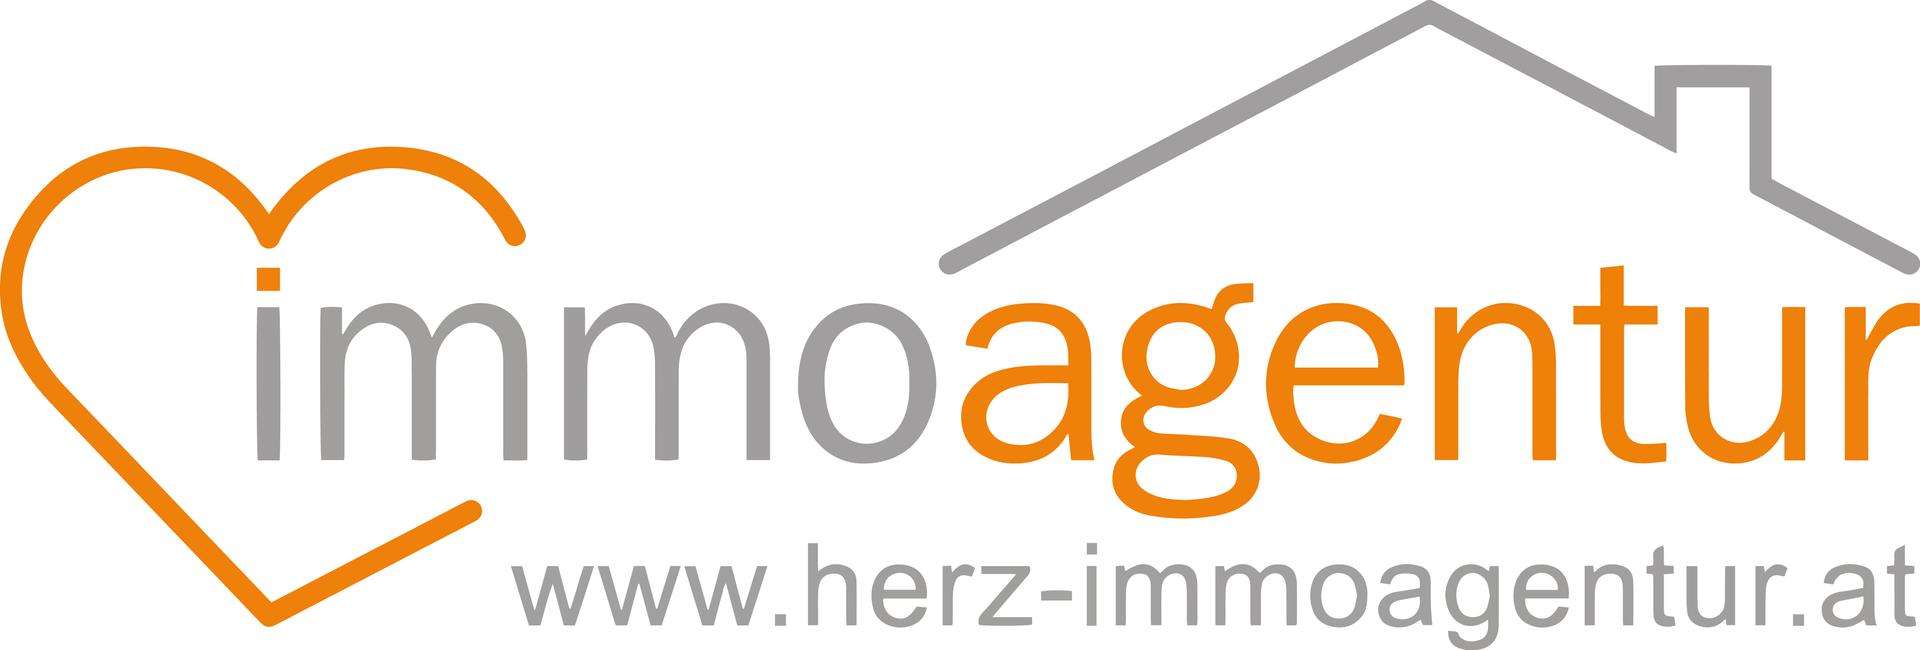 Makler Herz-Immoagentur GmbH logo